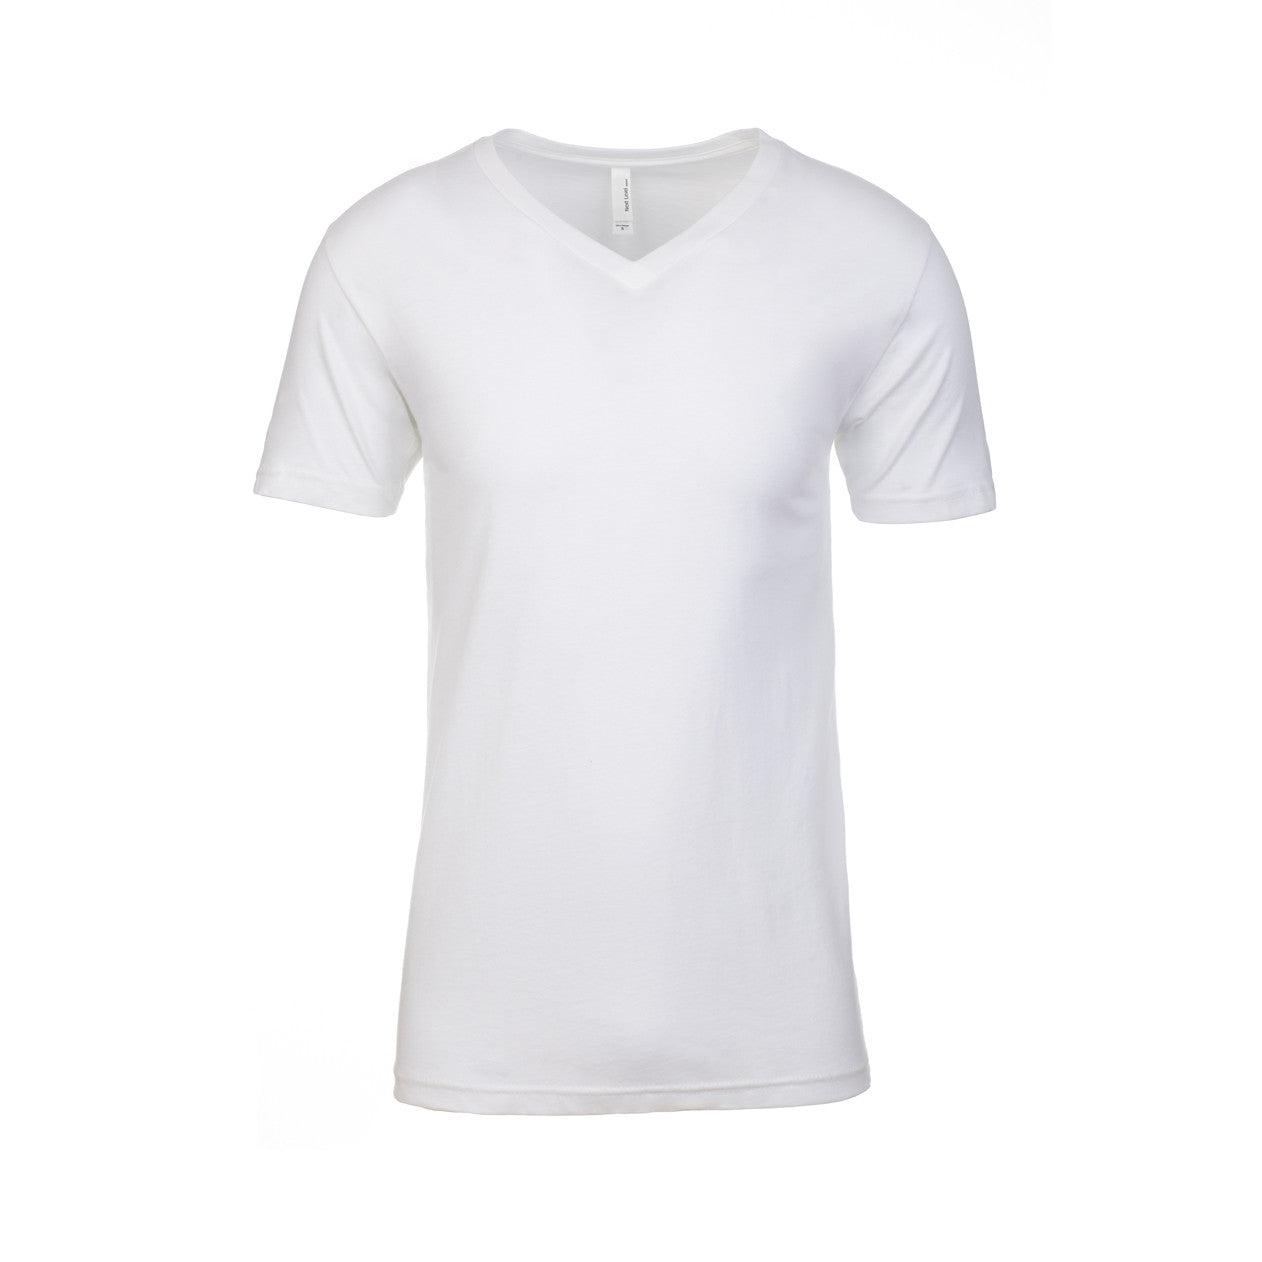 Men's Premium CVC V-Neck T-shirt - Next Level Australia